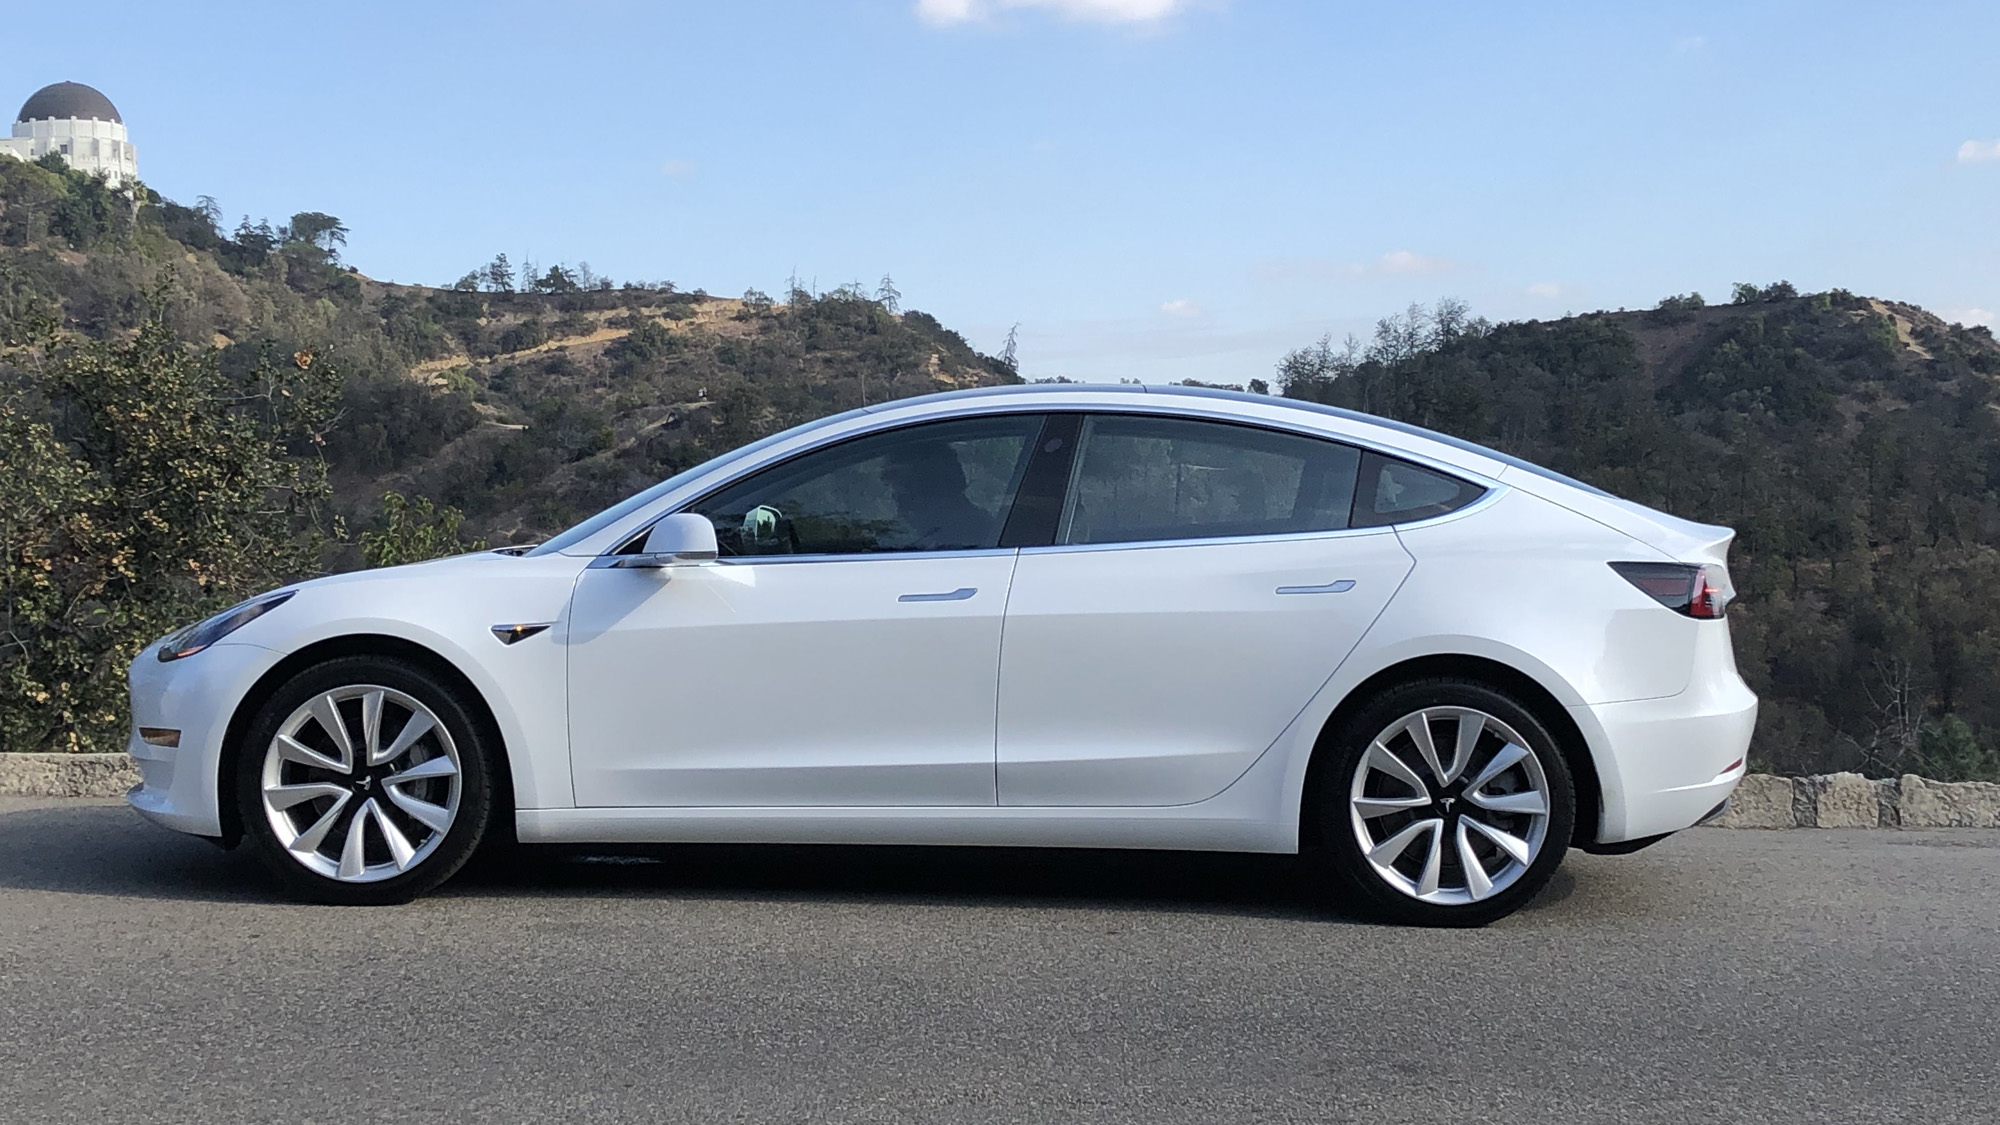 La nouvelle Tesla Model 3 n'a pas le succès escompté - Numerama